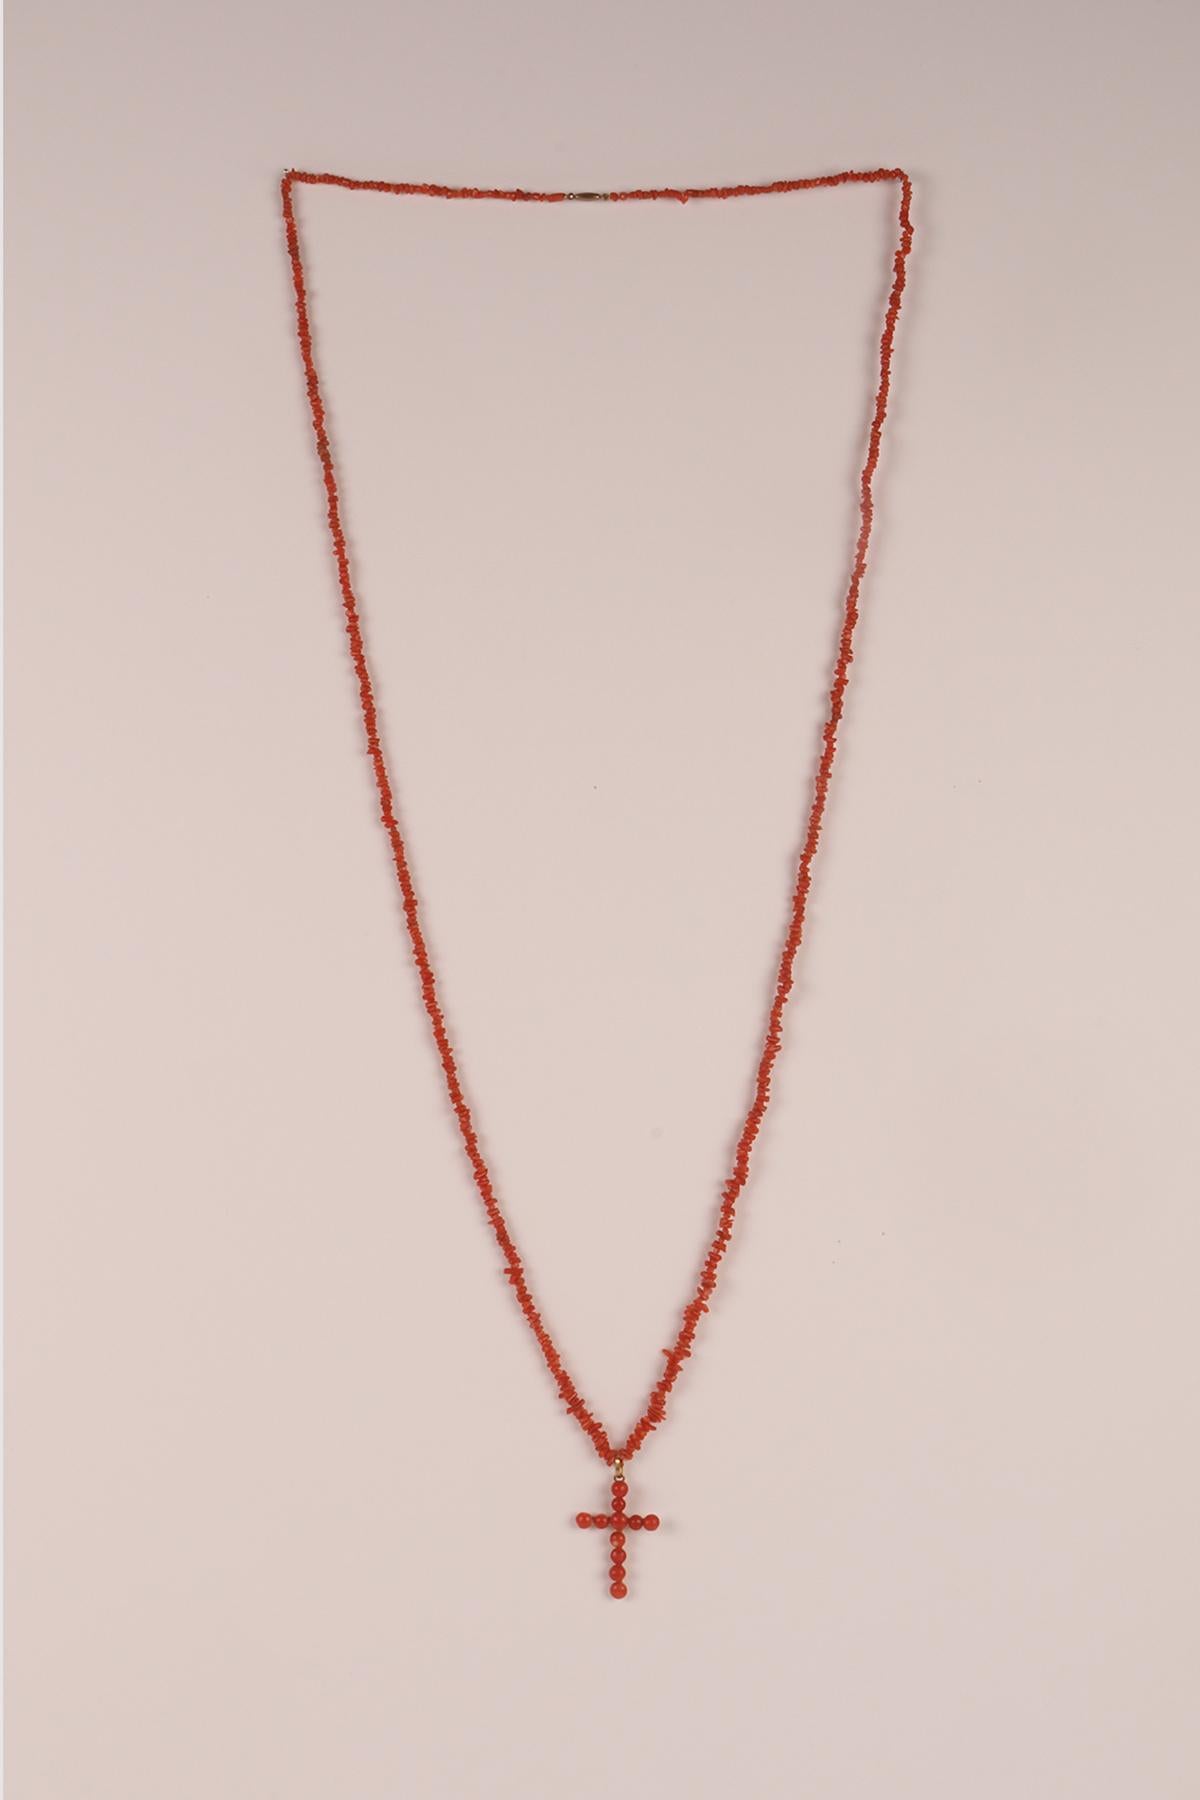 Un collier fin et long, composé de fragments de corail de Sciacca (Sicile) perforés dans une séquence irrégulière, est fermé par un fermoir en or à faible carat avec un baril allongé. Une croix régulière est suspendue au collier, composée d'une